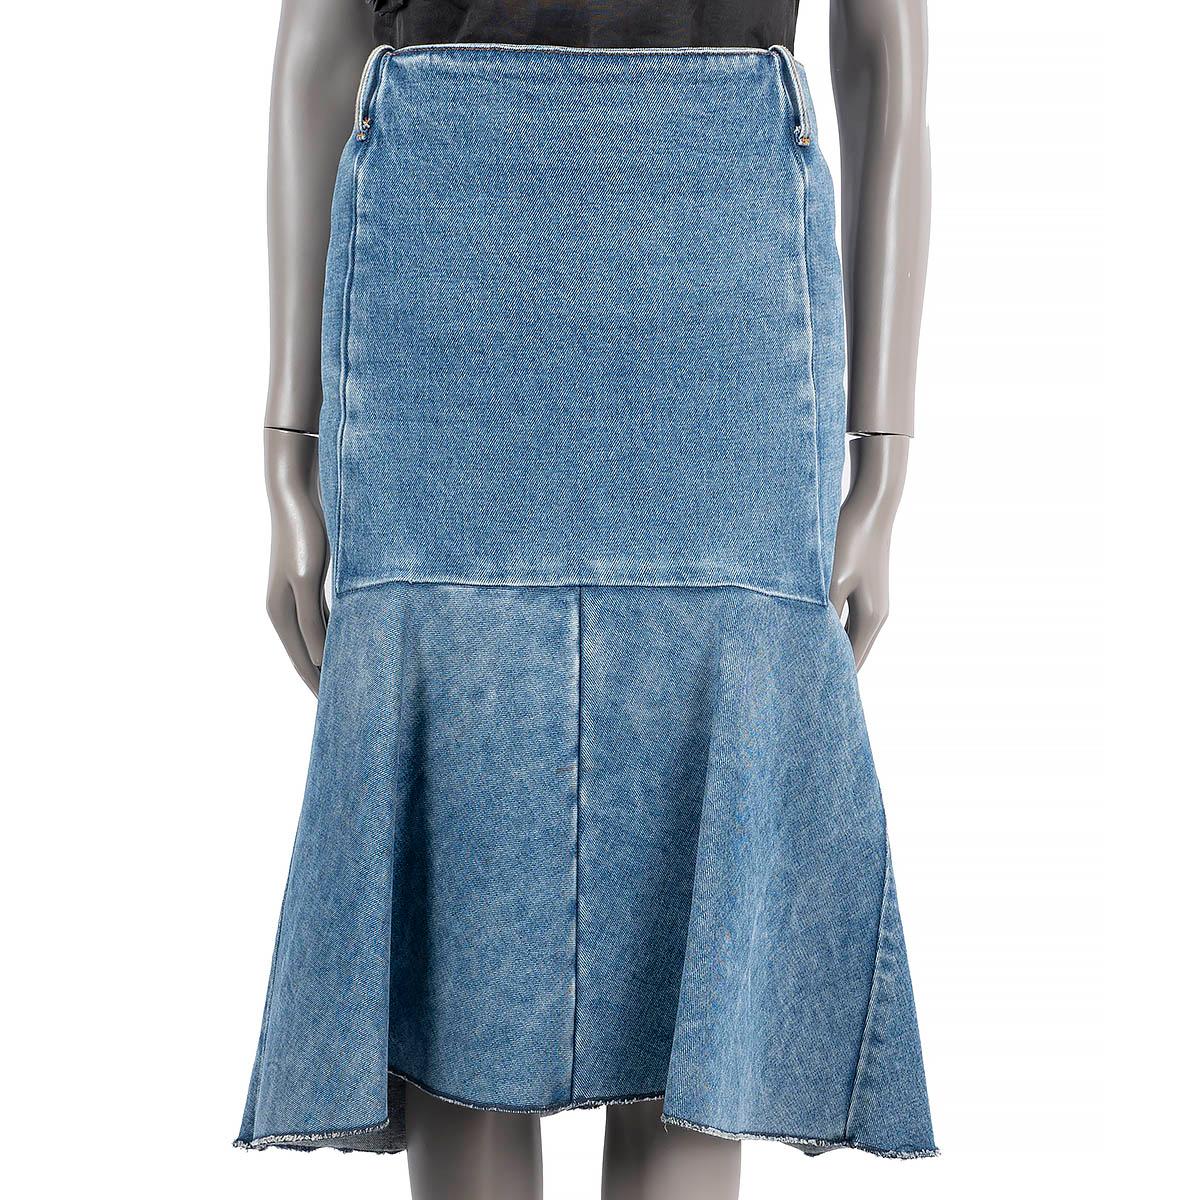 Bleu BALENCIAGA bleu coton 2019 FLUTED HIGH WAISTED DENIM Skirt 38 S en vente